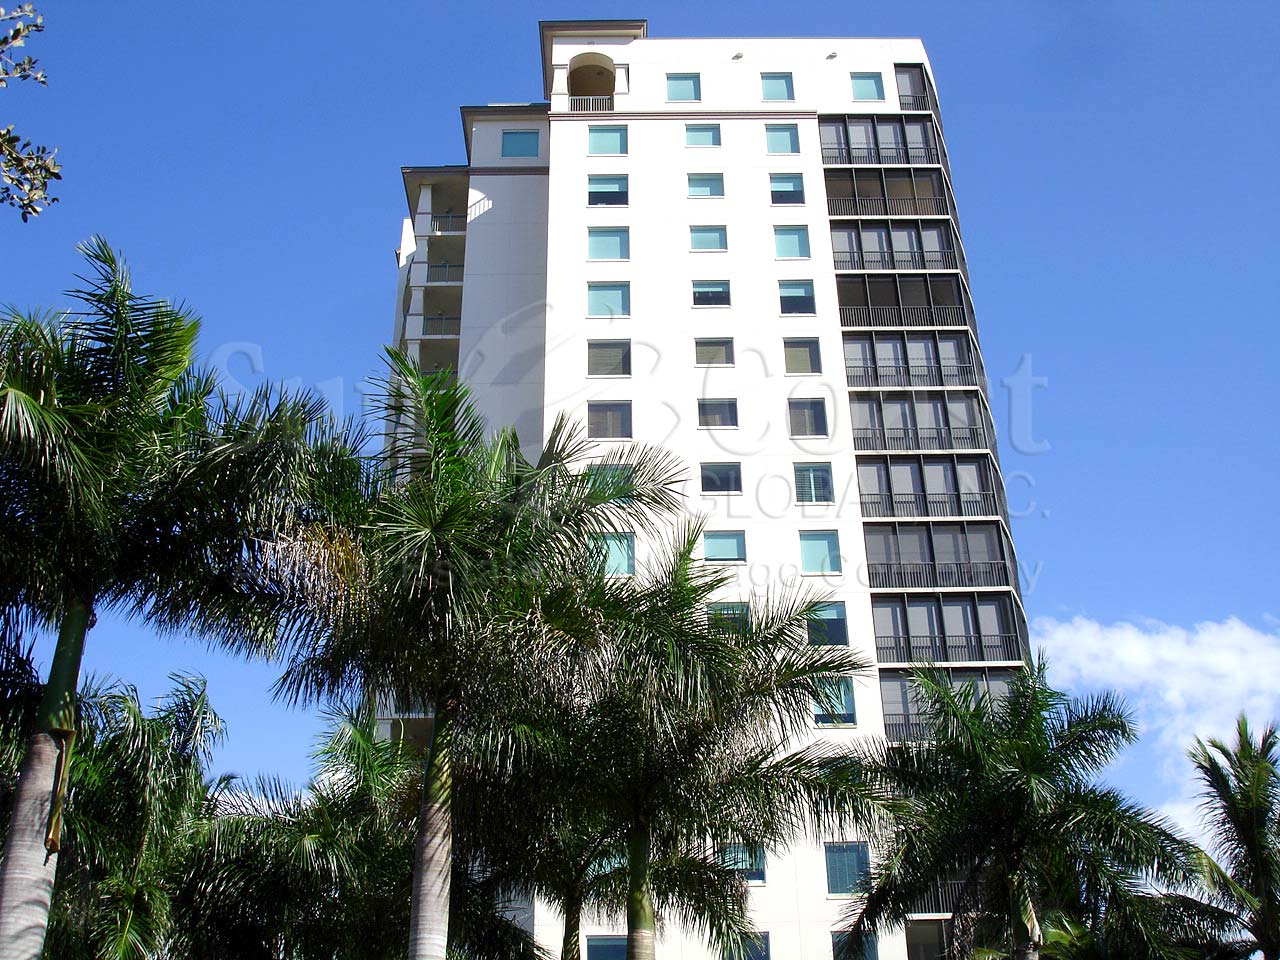 Nevis Condominium Building